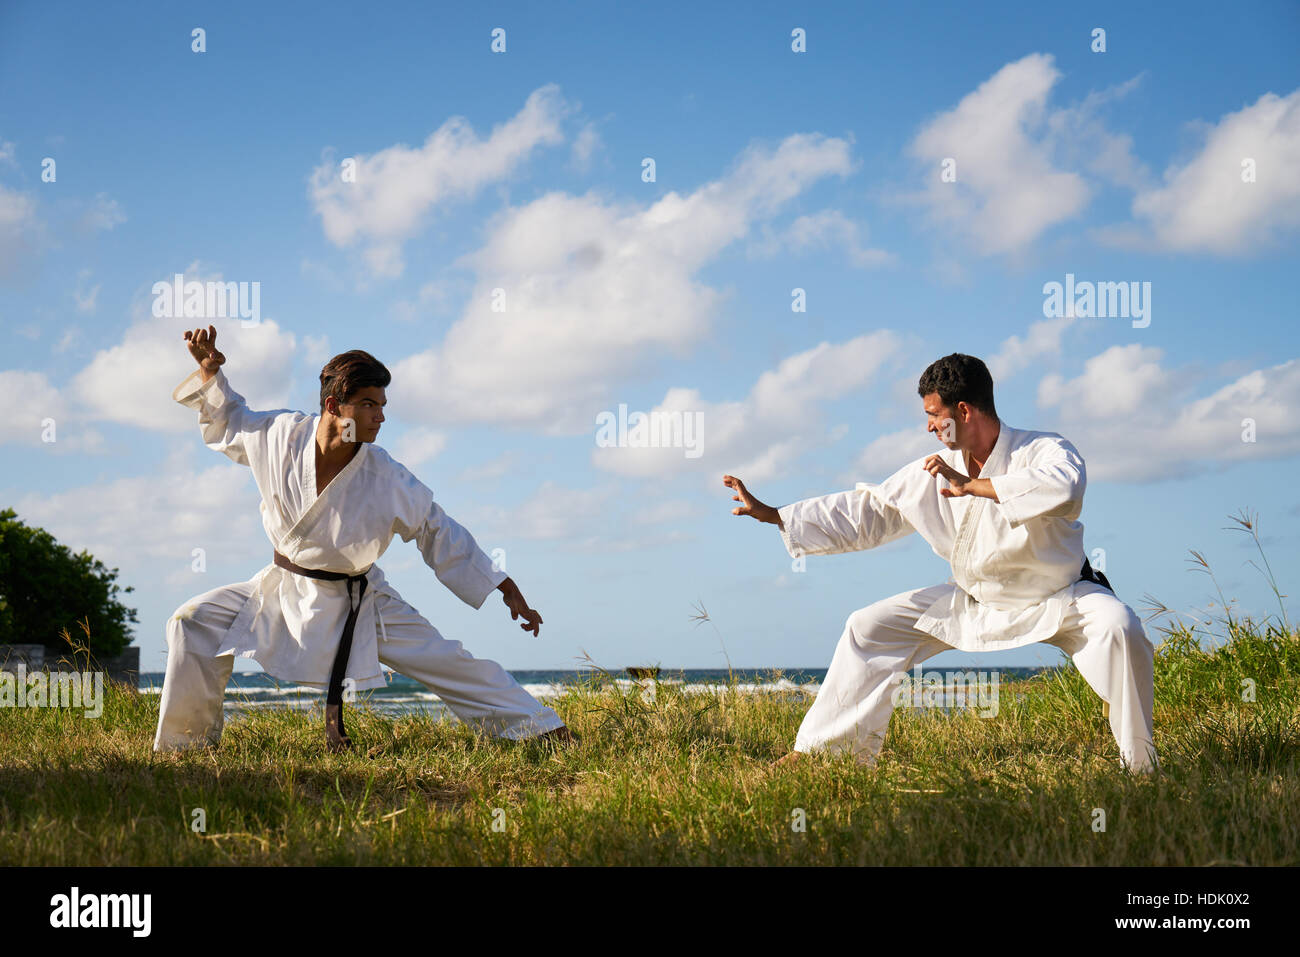 Kampf- und extreme Sportarten. Hispanische Männer trainieren im Karate und  traditionelle Kampfkunst. Simulation der Kampf am Strand nahe dem Meer  Stockfotografie - Alamy